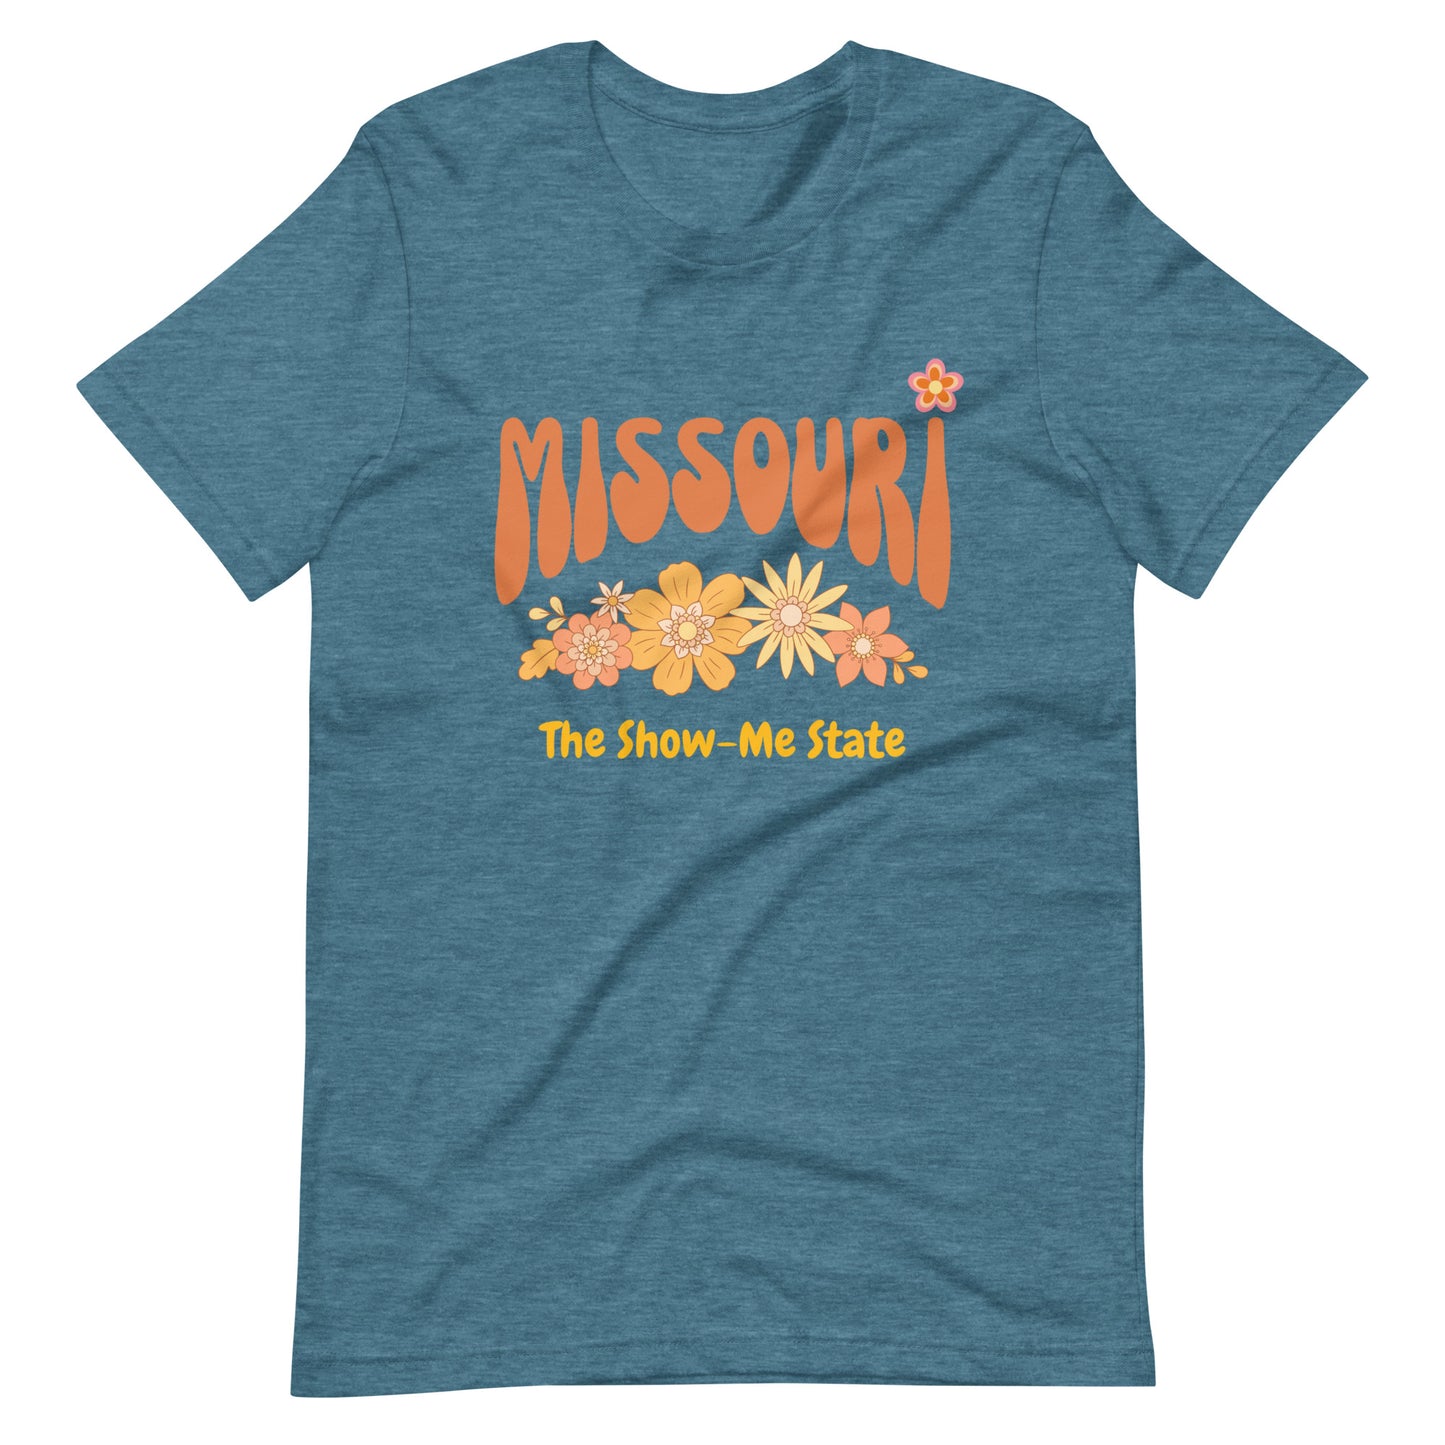 Missouri The Show-Me State Tee